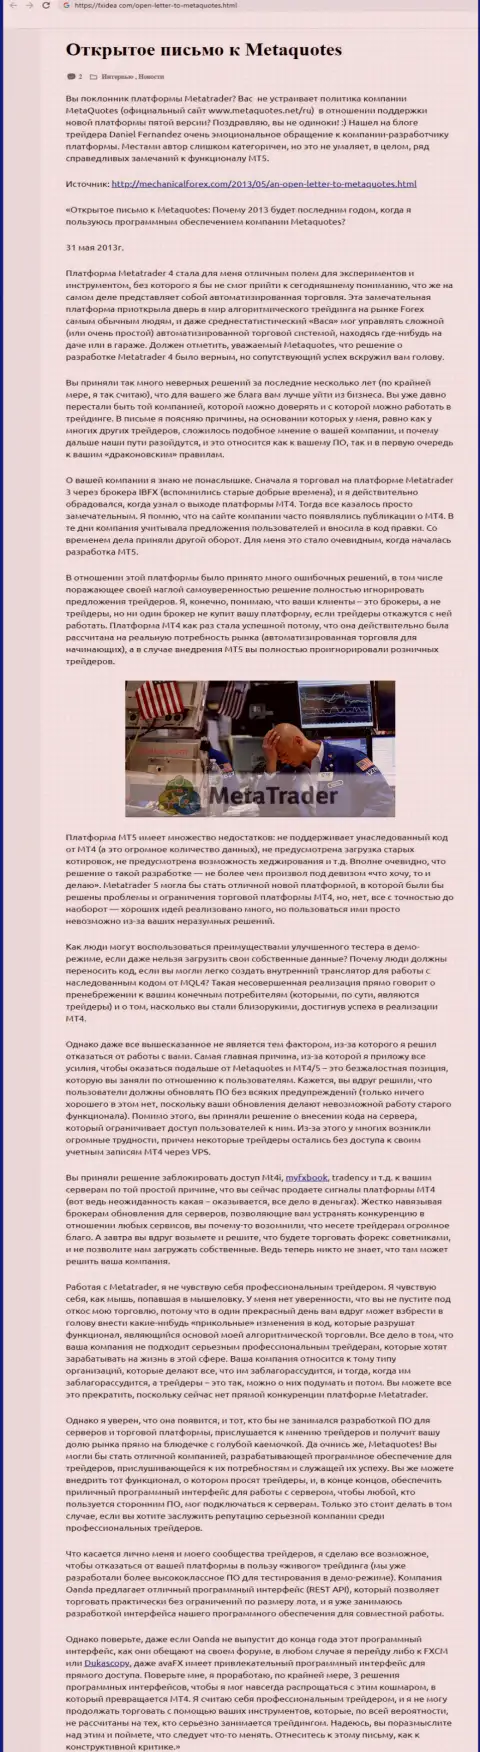 Сообщение биржевого трейдера мошенников MetaQuotes Software Corp, где он показал свое собственное впечатление об этой организации